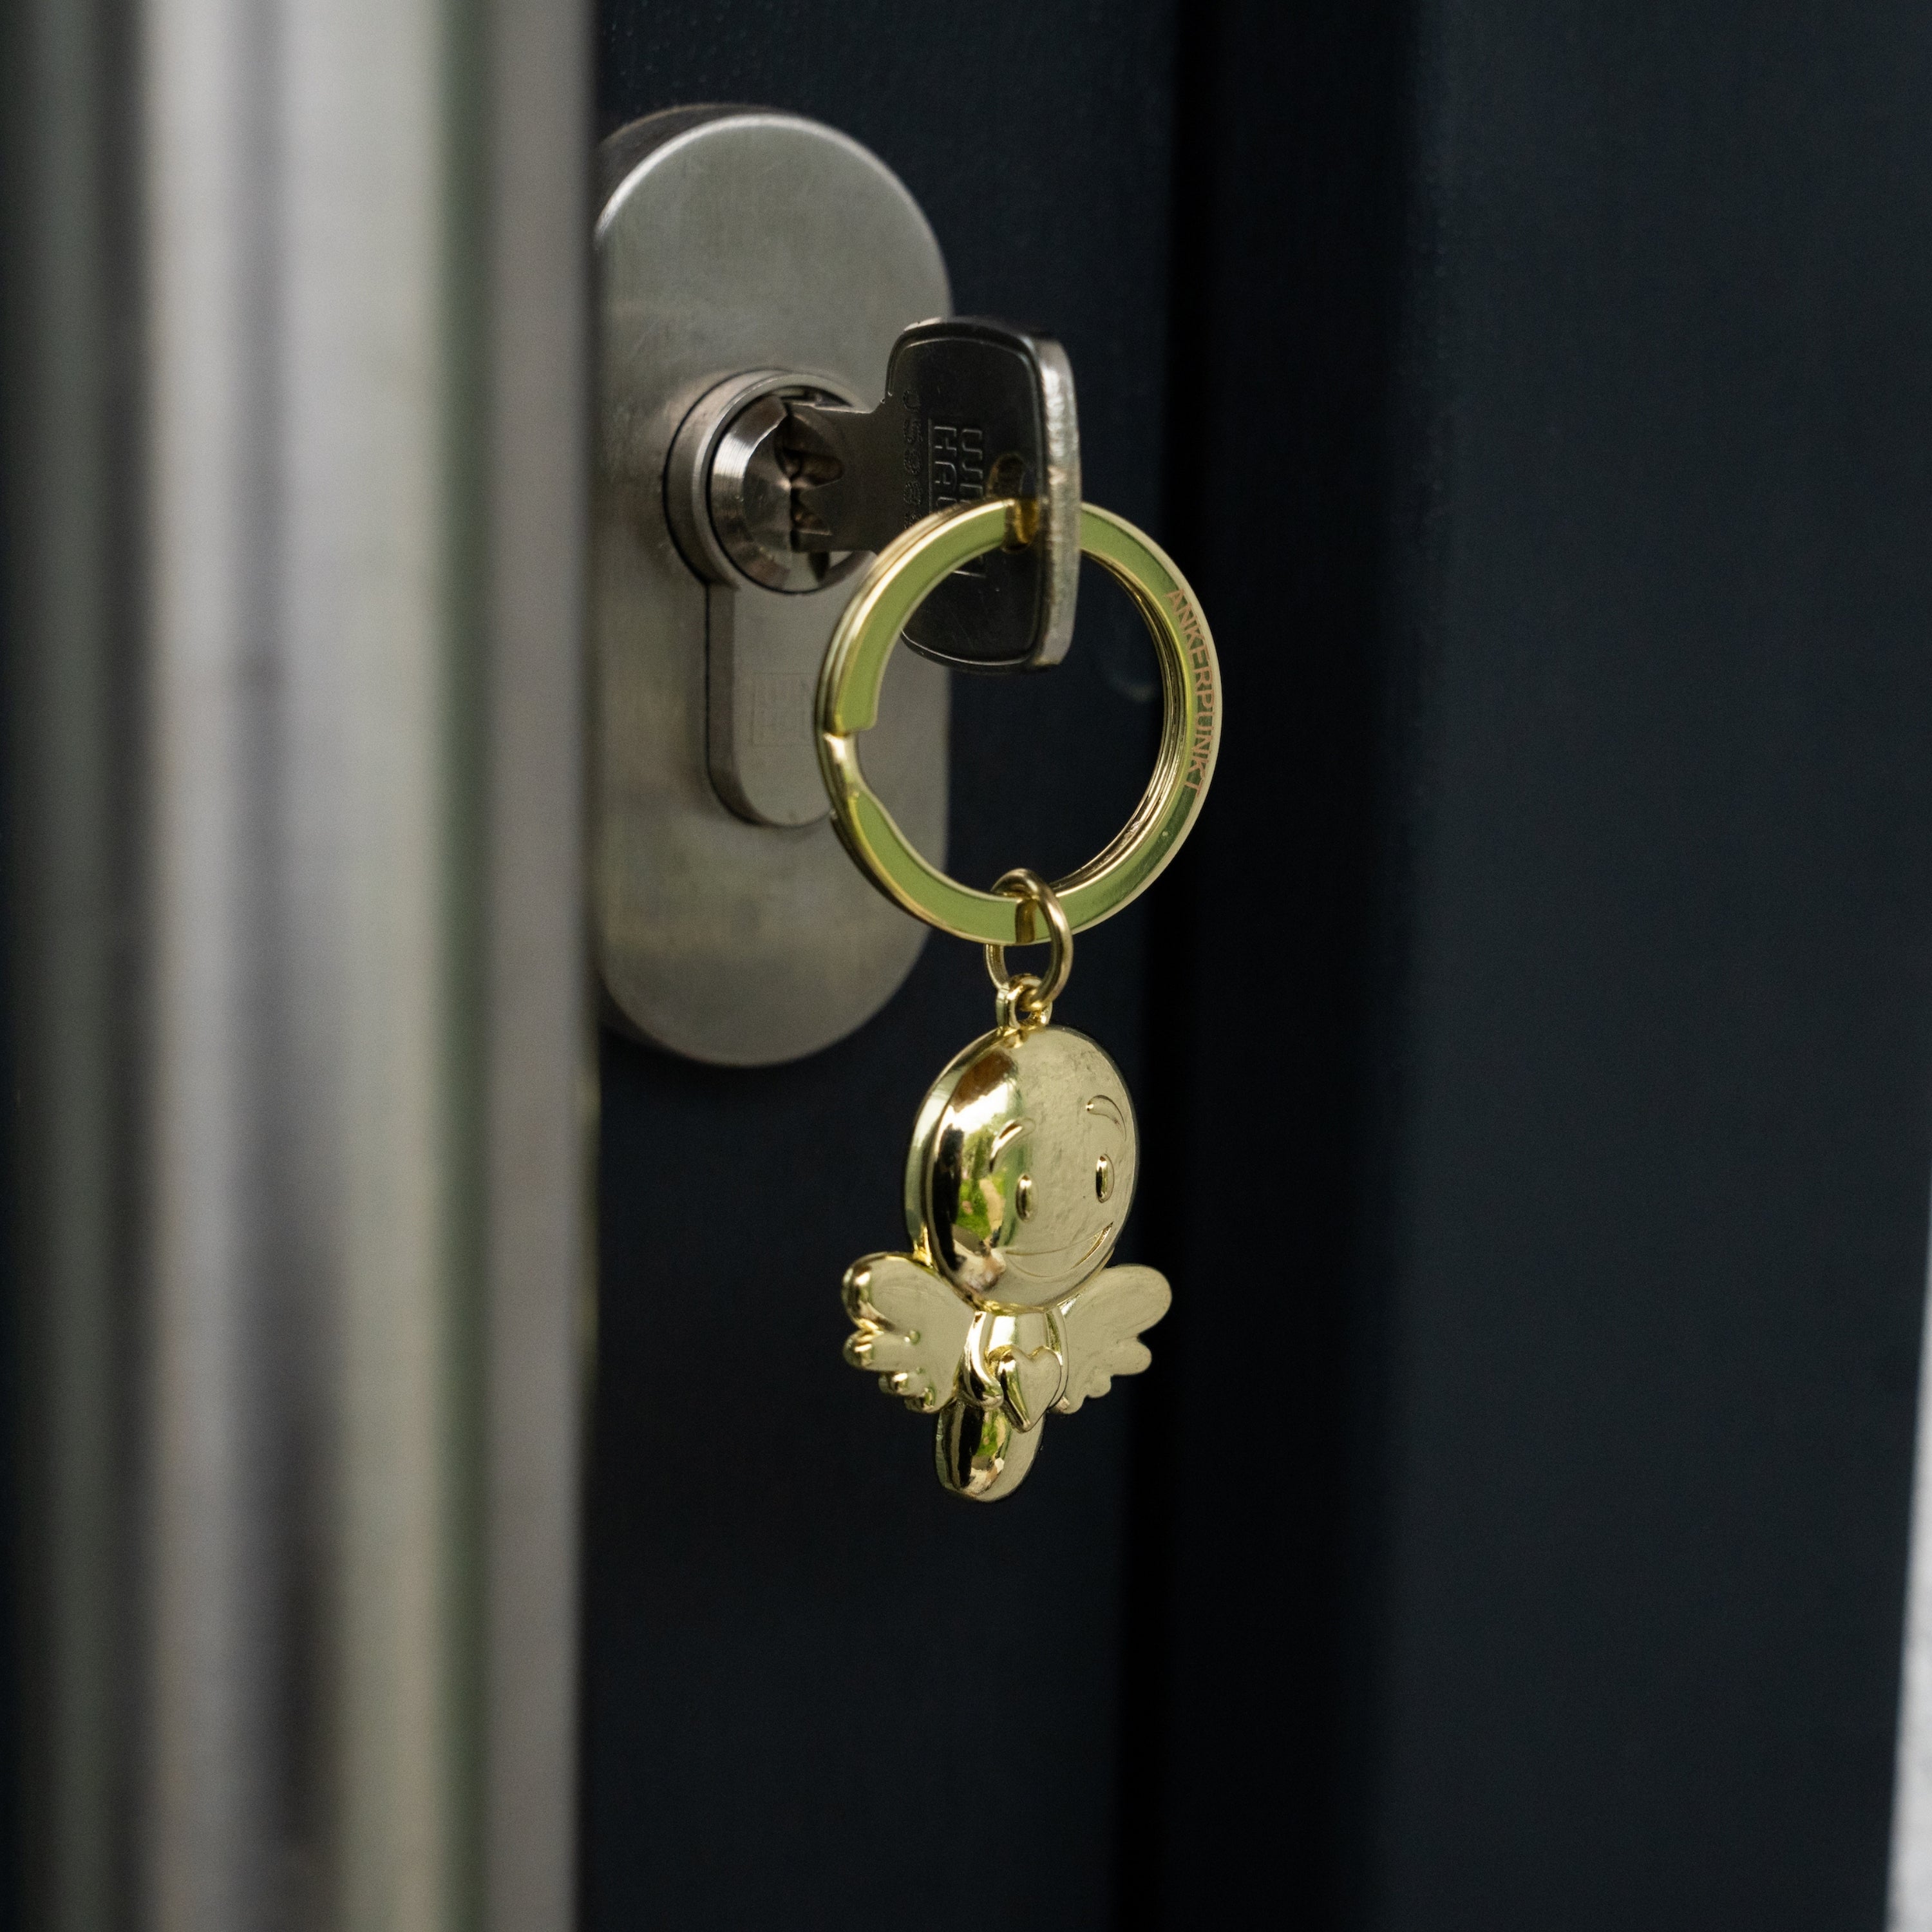 Schlüsselanhänger Lovely gold glänzend im Türschloss hängend